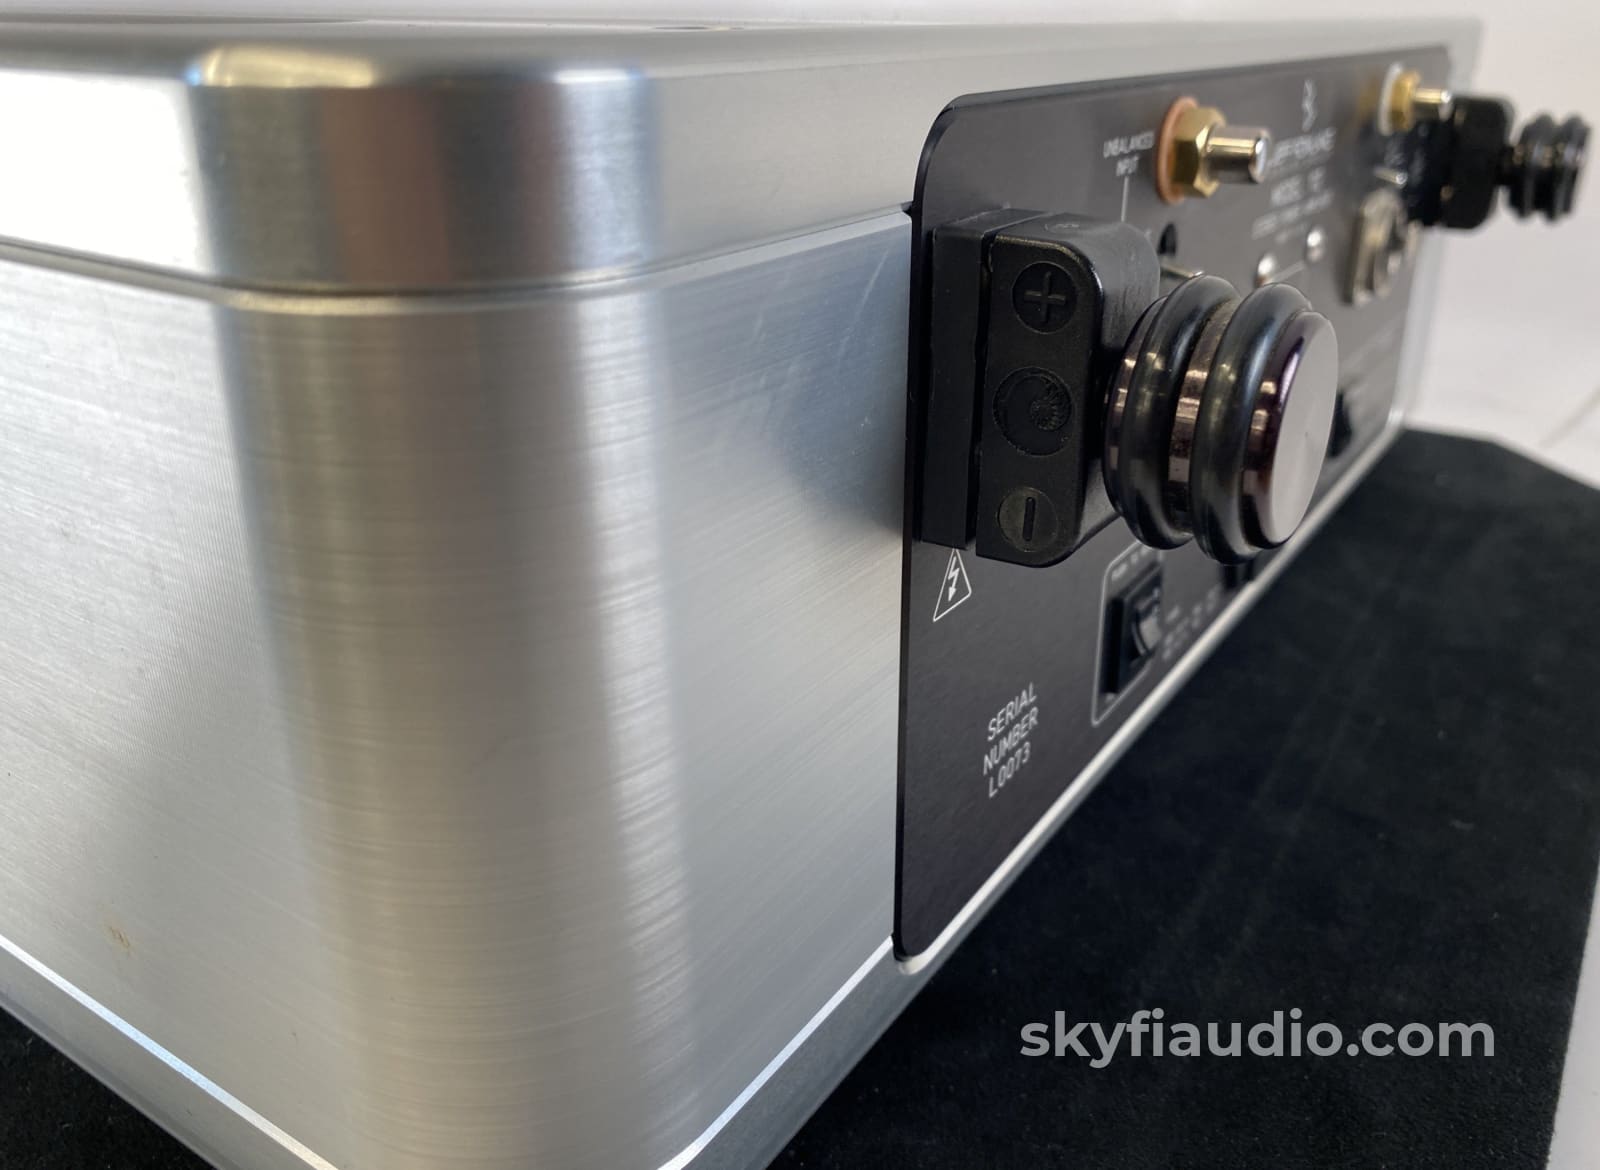 Jeff Rowland Model 112 Stereo Power Amplifier